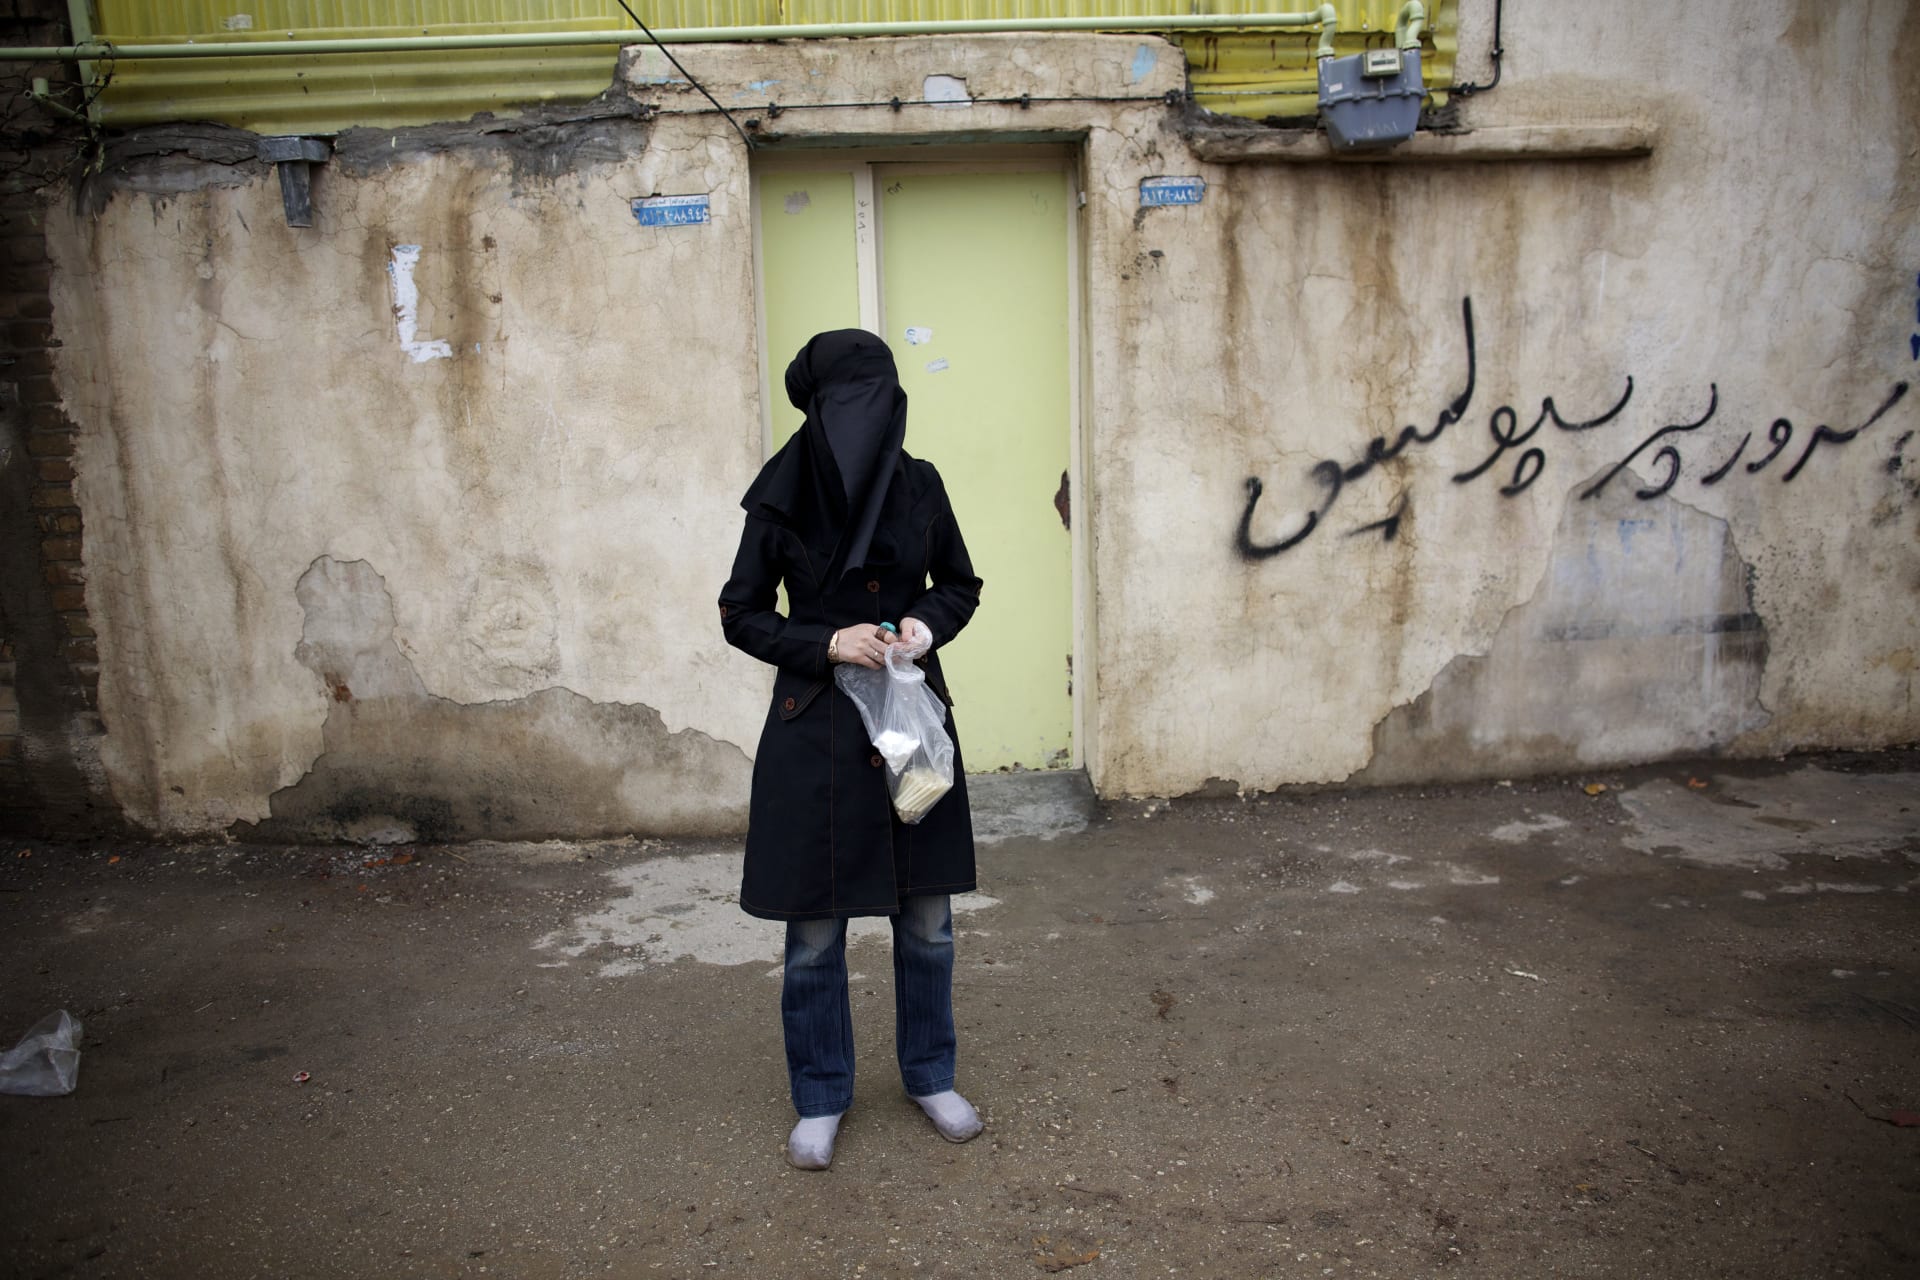 ماسبب إدانة خبراء الأمم المتحدة لمشروع قانون الحجاب في إيران؟